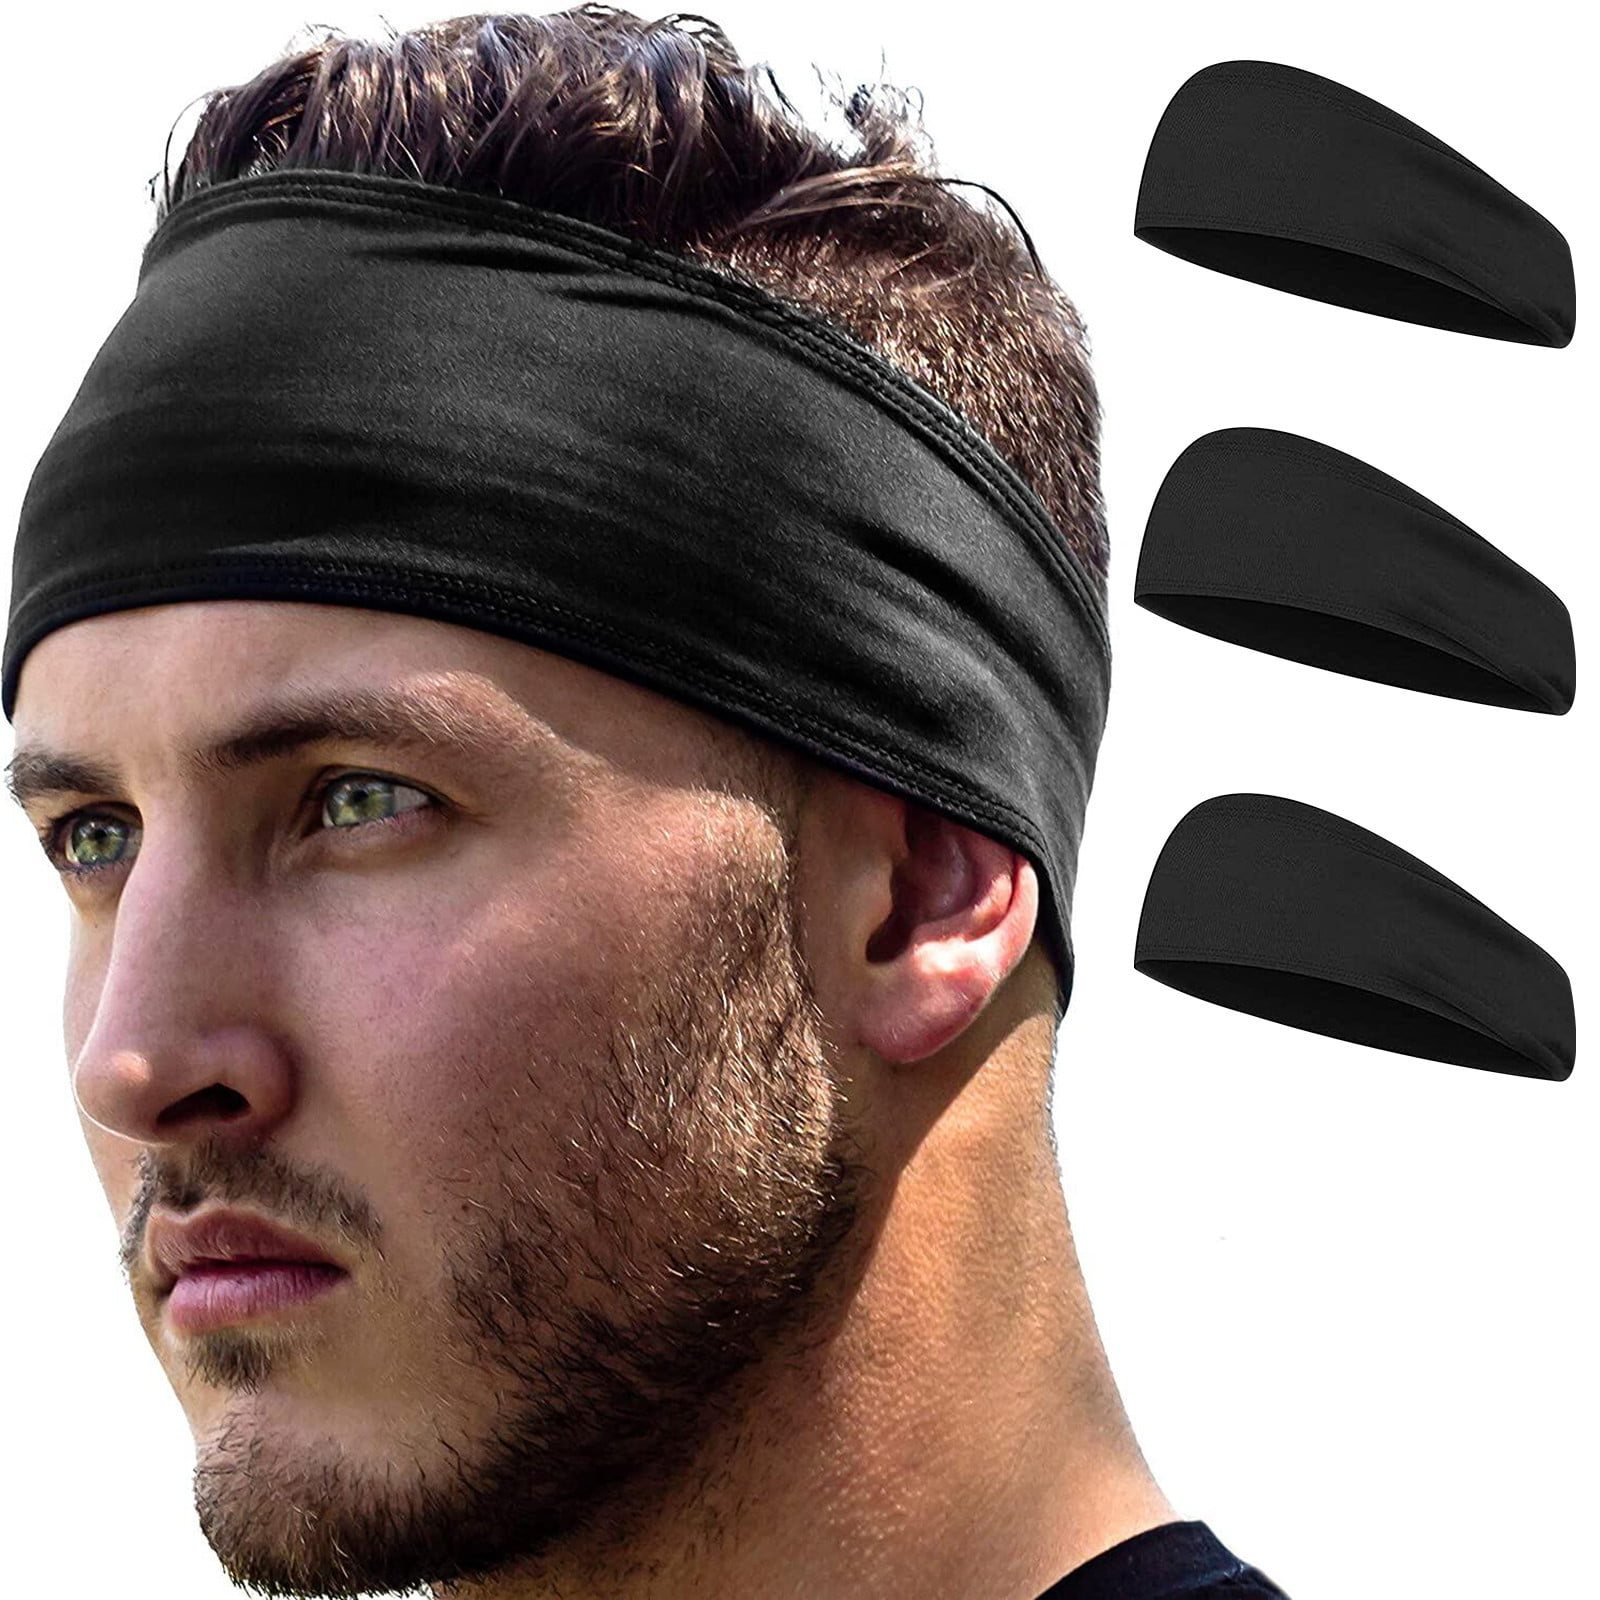 DressInn Men Accessories Headwear Headbands Performance Dry Slim Headband Black Man 